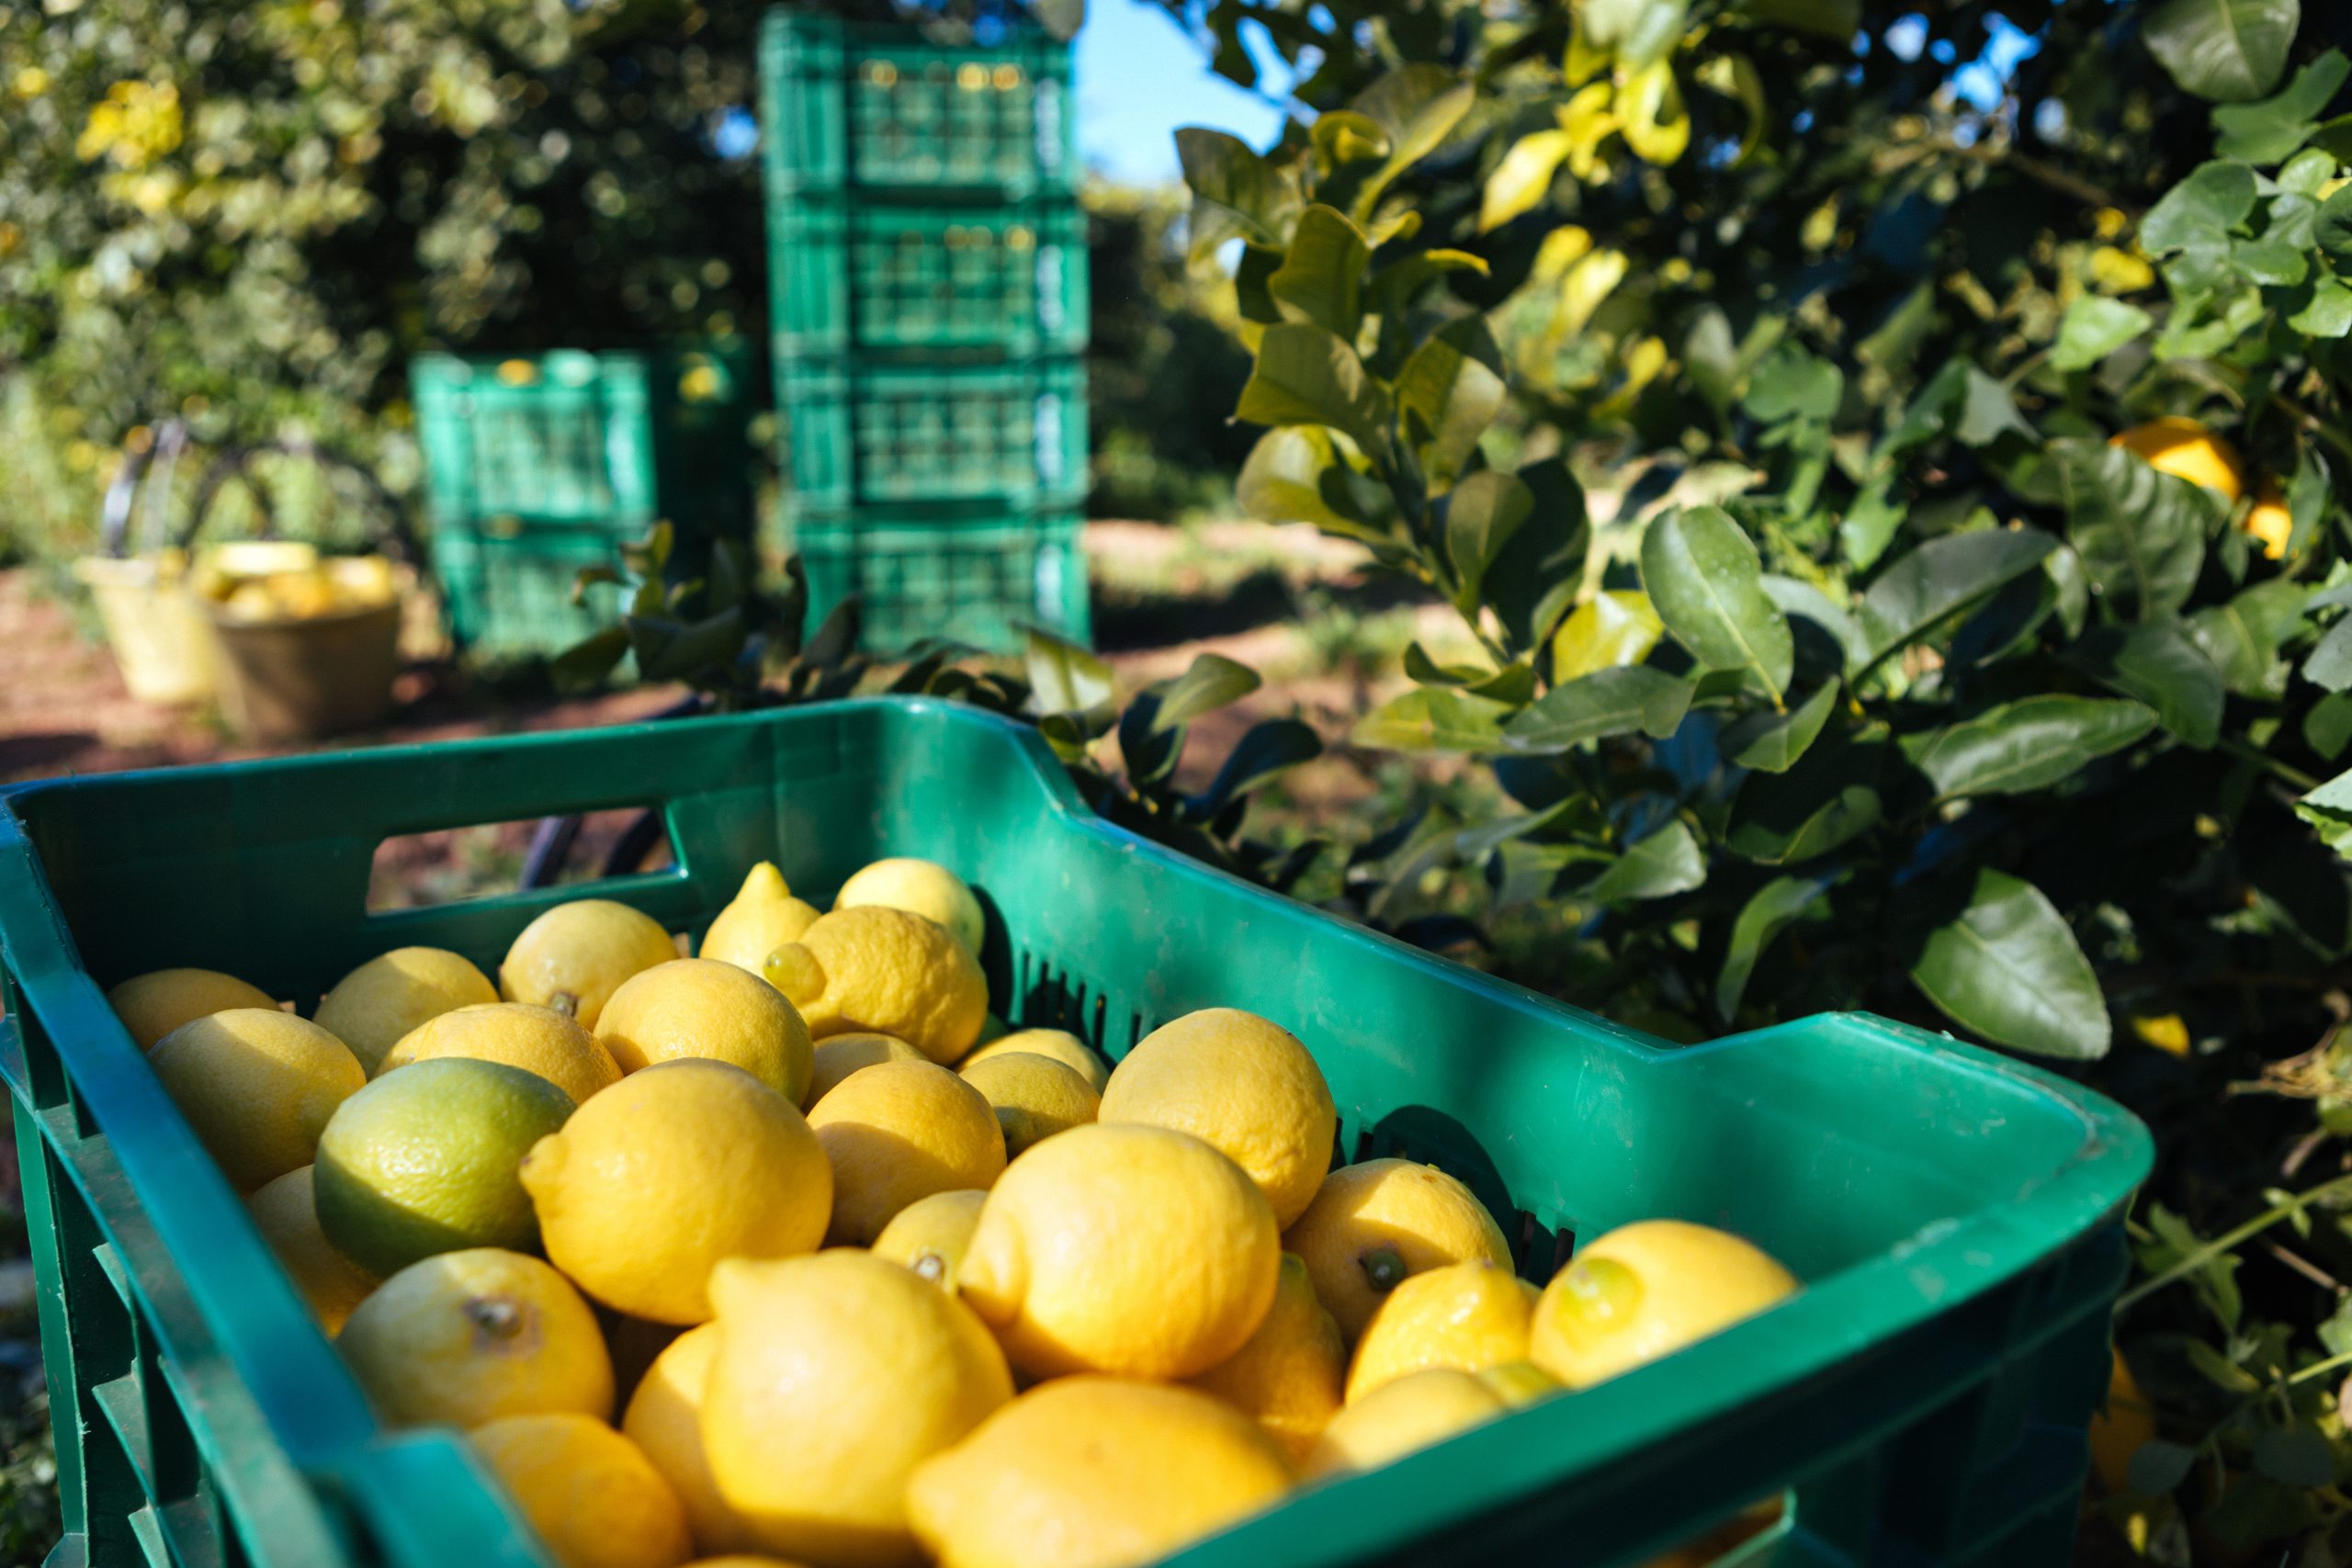  Zitronen aus Spanien oder Portugal direkt nach Hause bestellen per Paket